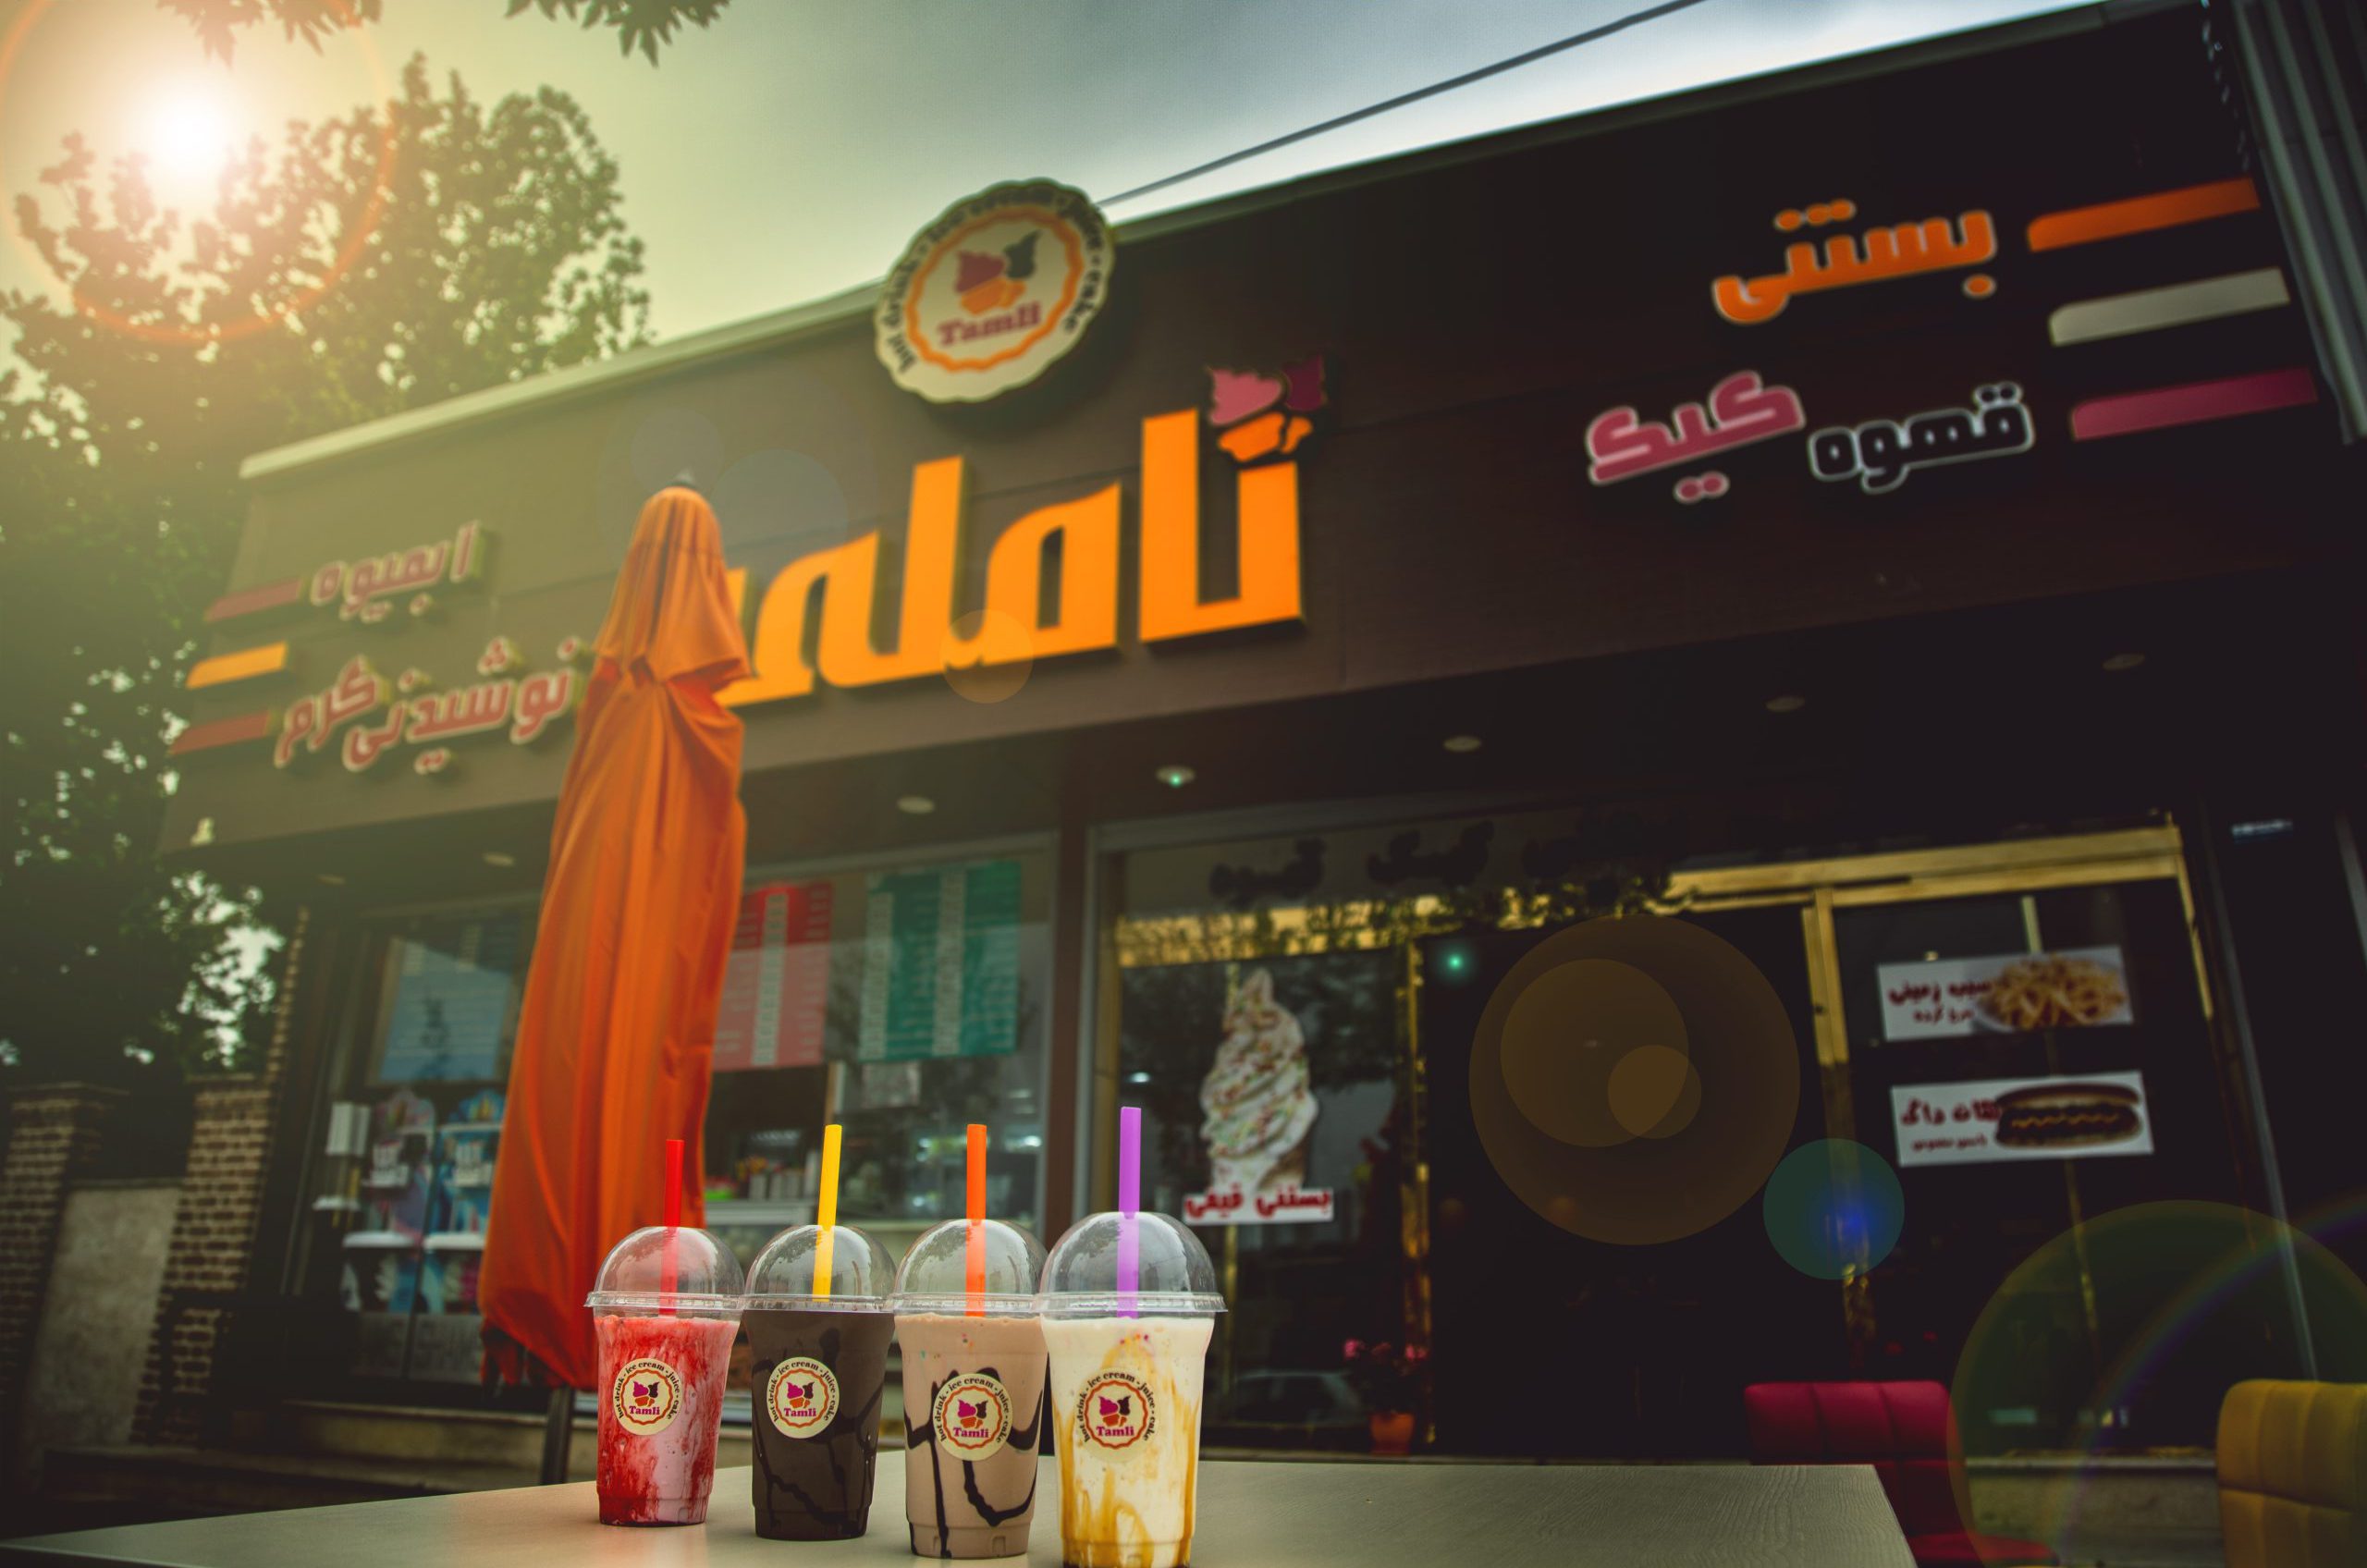 کافه بستنی تاملی کرج - عکس از: Mohammadreza Naderi